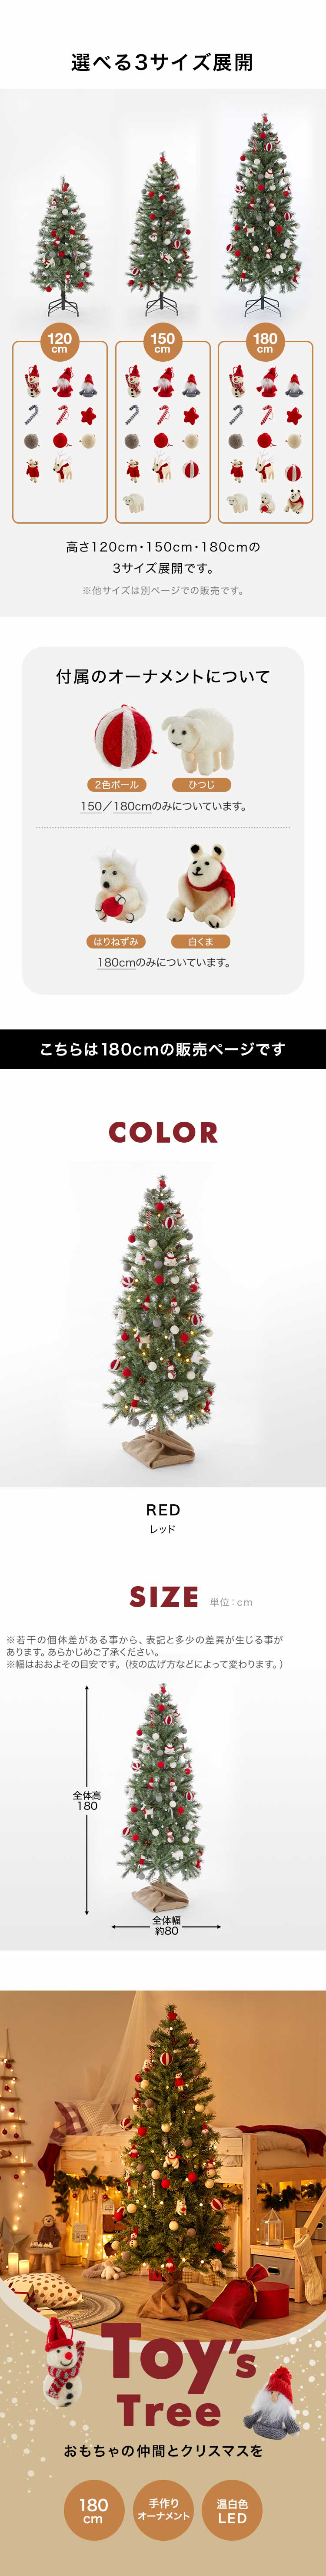 クリスマスツリー 180cm セット おしゃれ ツリー オーナメント 収納箱 ...